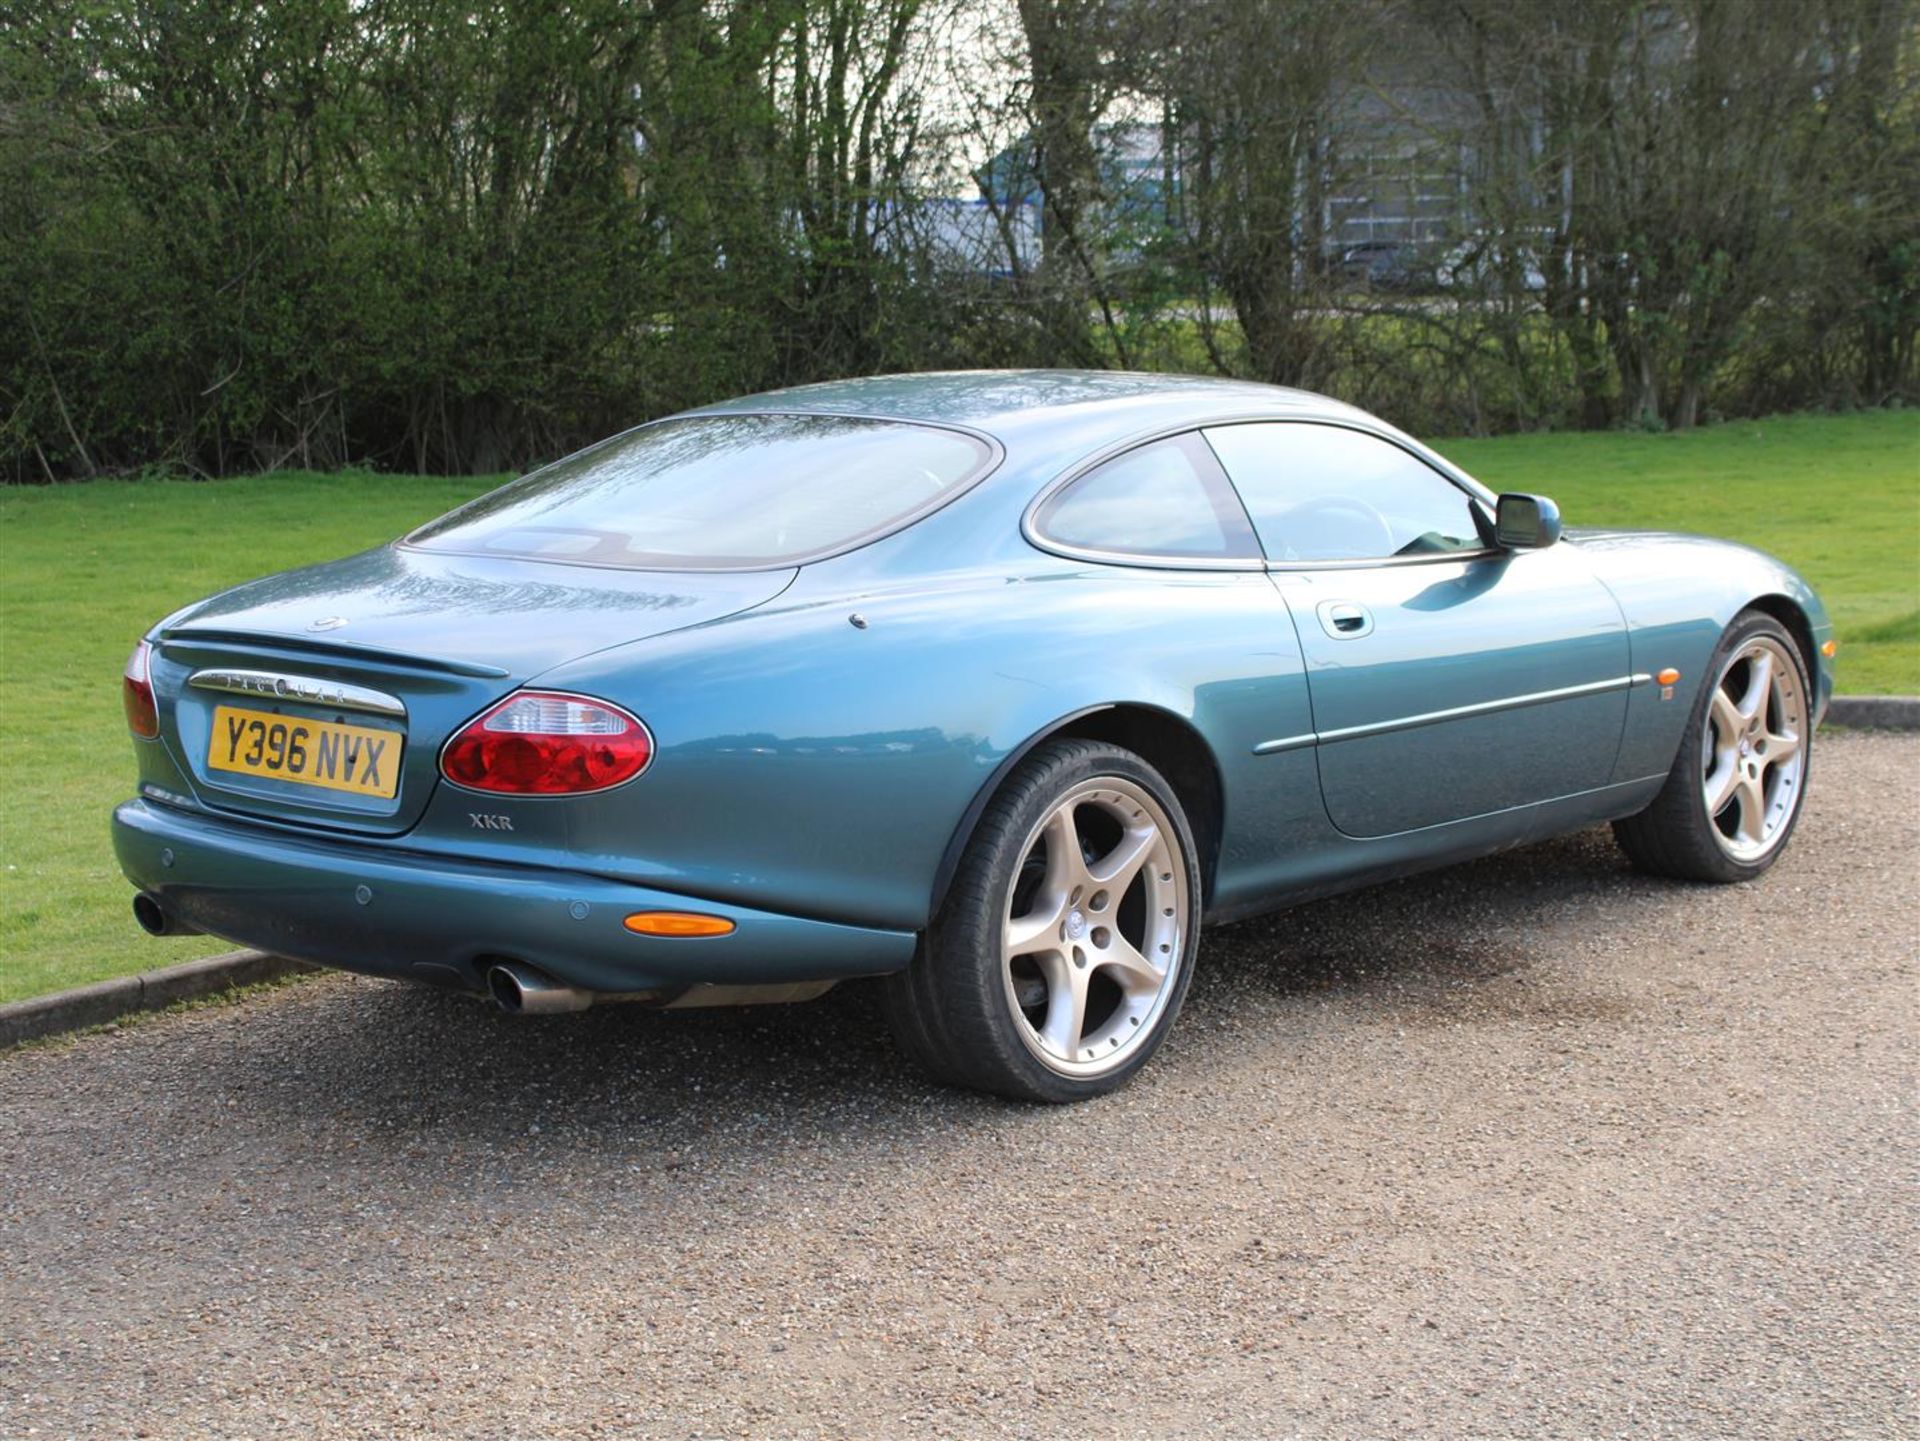 2001 Jaguar XKR 4.0 Coupe Auto - Image 6 of 23